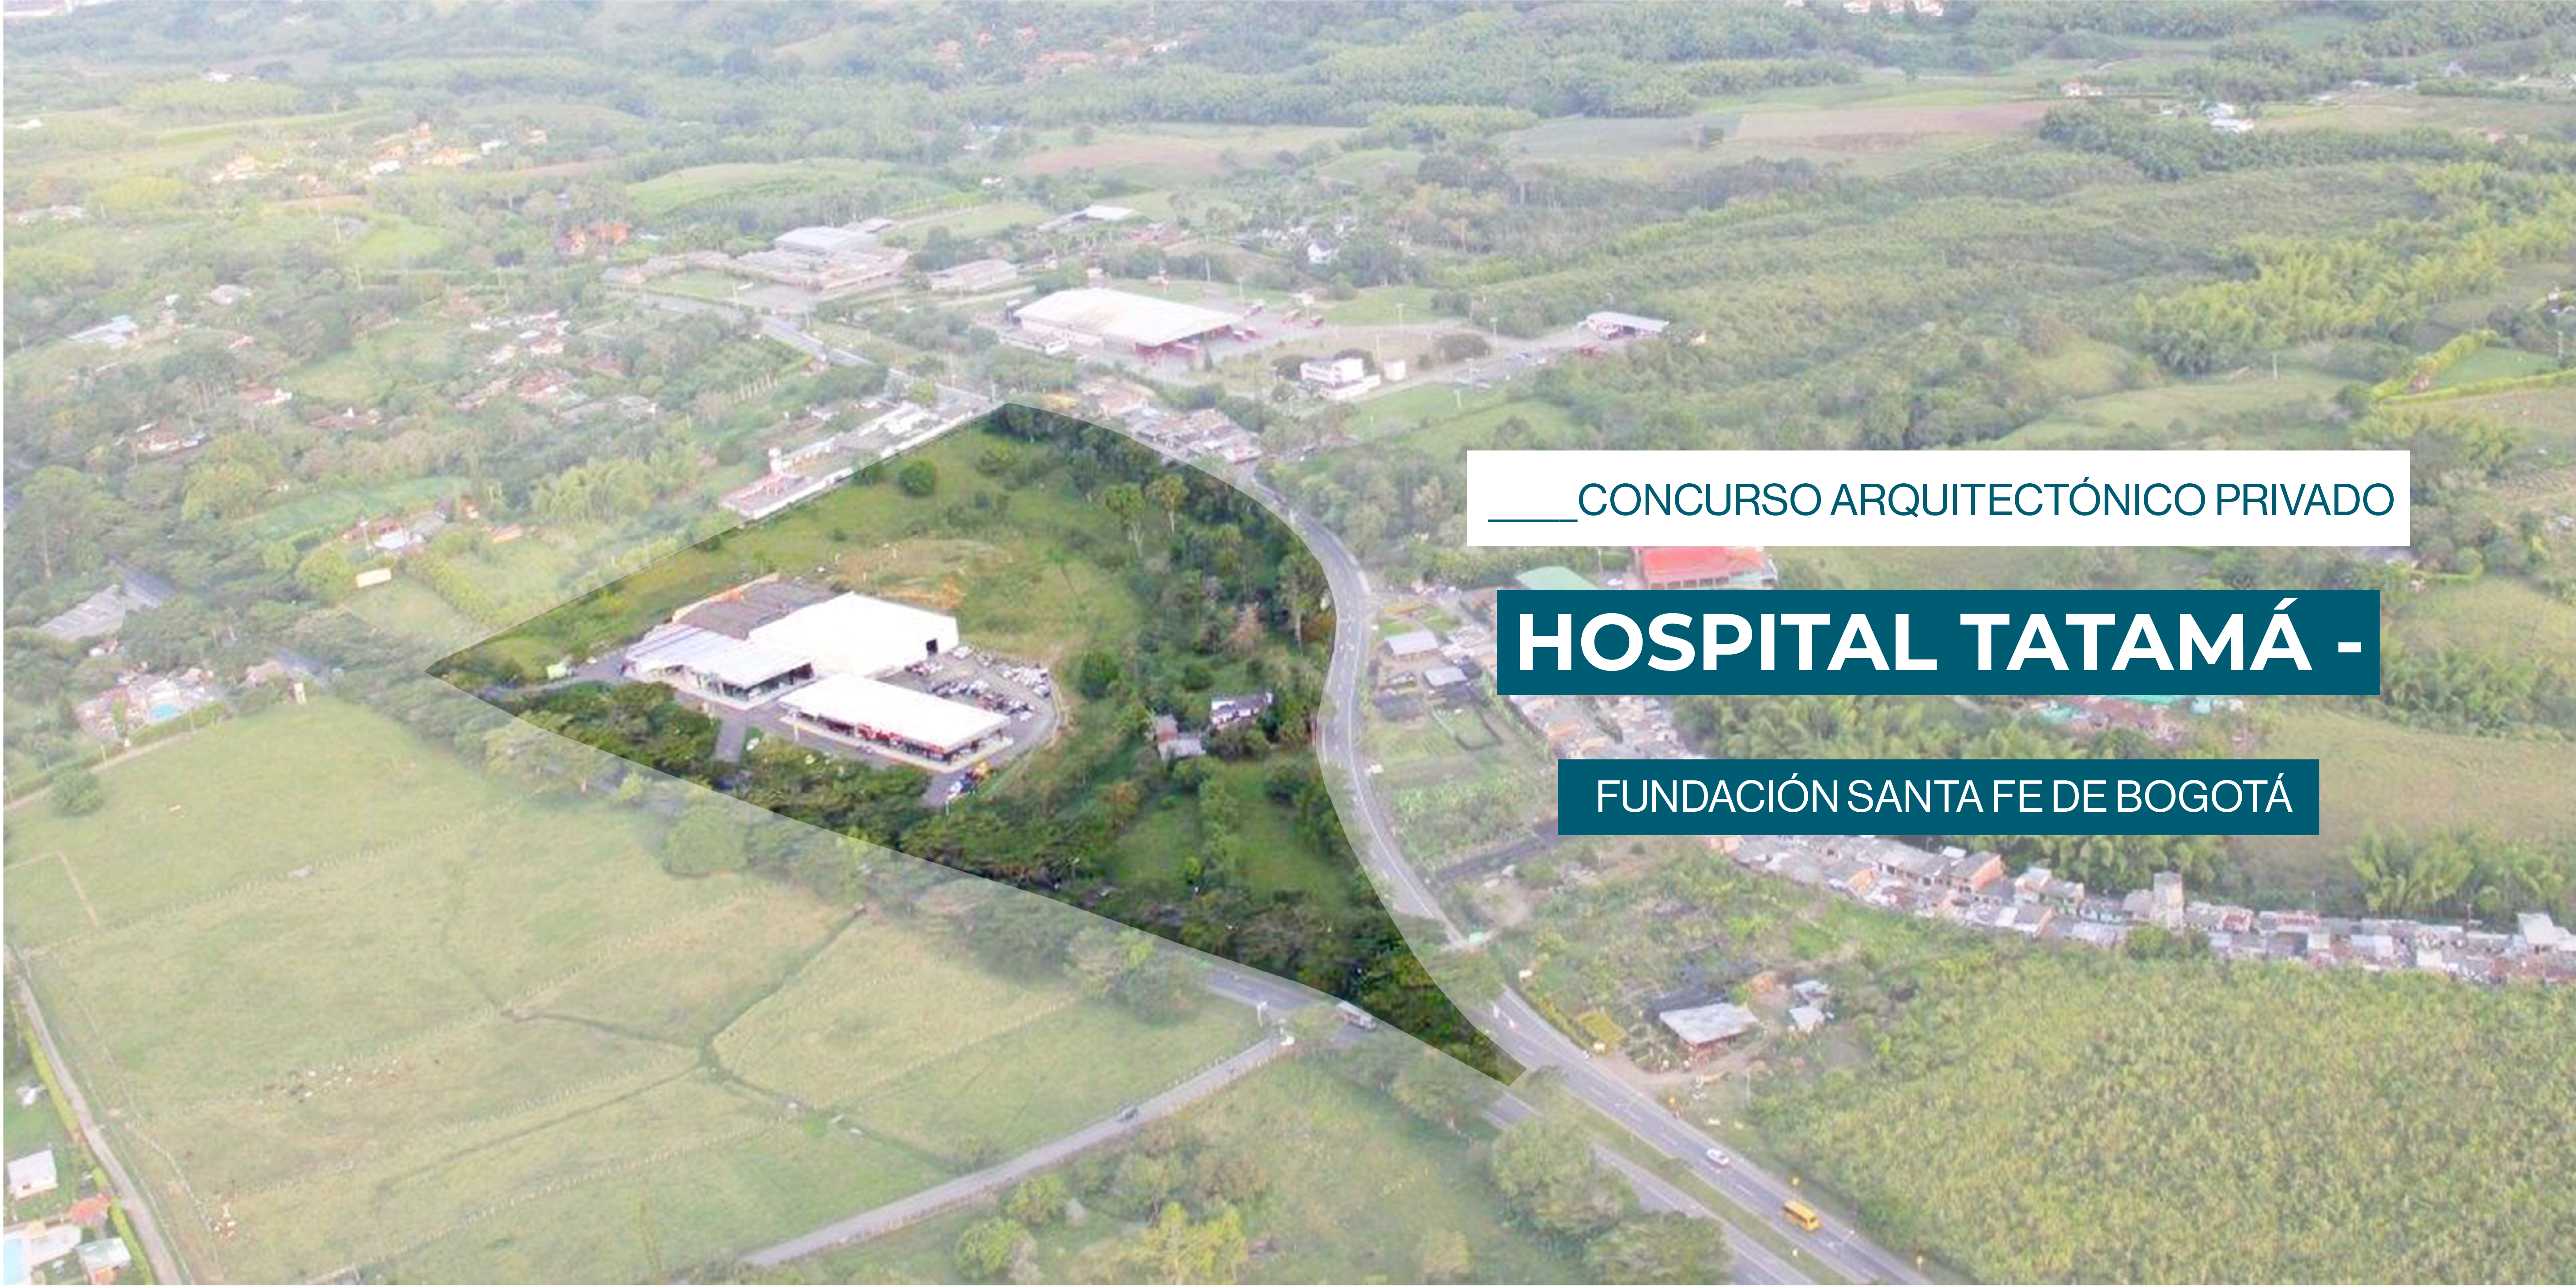 Concurso arquitectónico Hospital Tatamá – Fundación Santa Fe de Bogotá